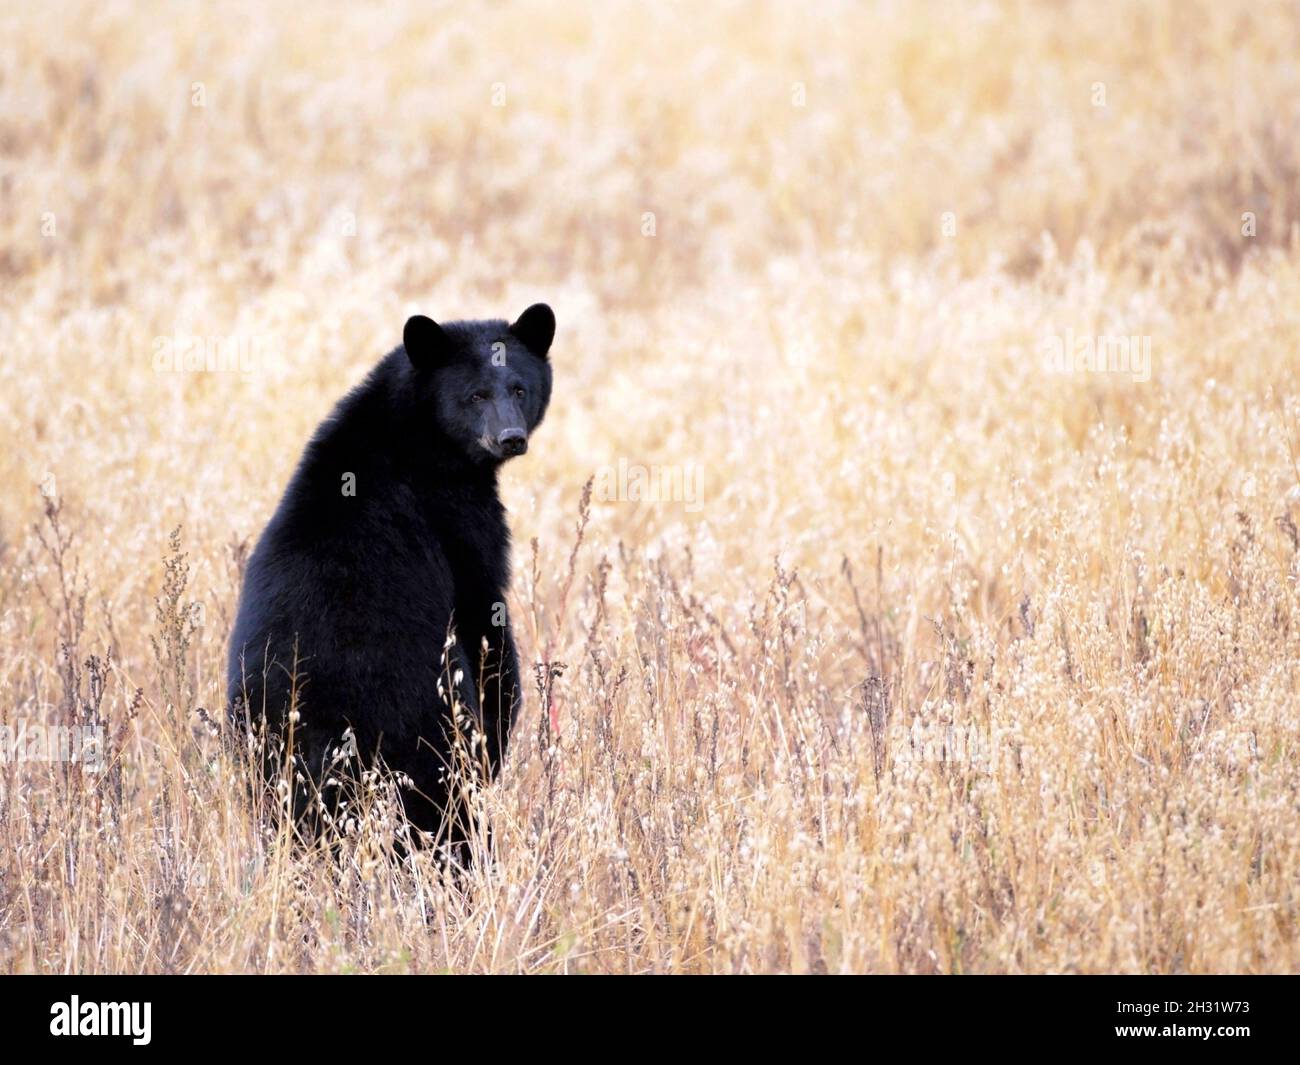 Black Bear standing in a farmers Oat field, looking back. Stock Photo